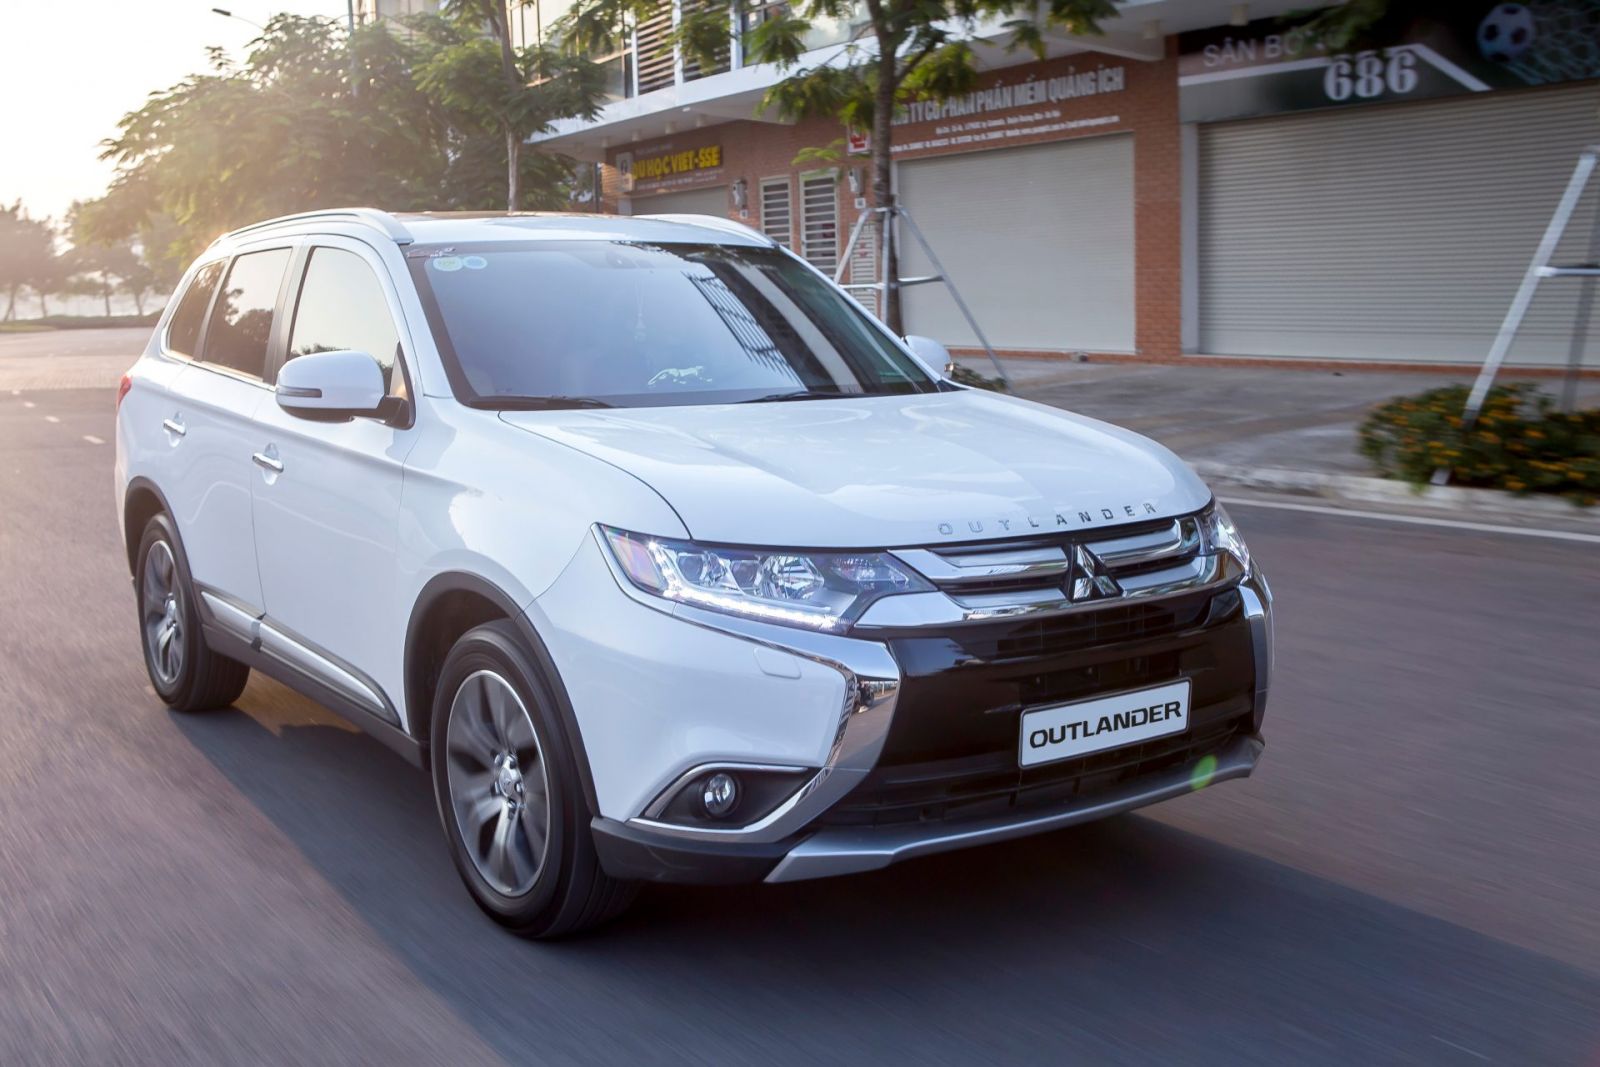 Mitsubishi Motors nước Việt Nam  Thông báo thanh lý xe cộ vẫn qua chuyện sử dụng